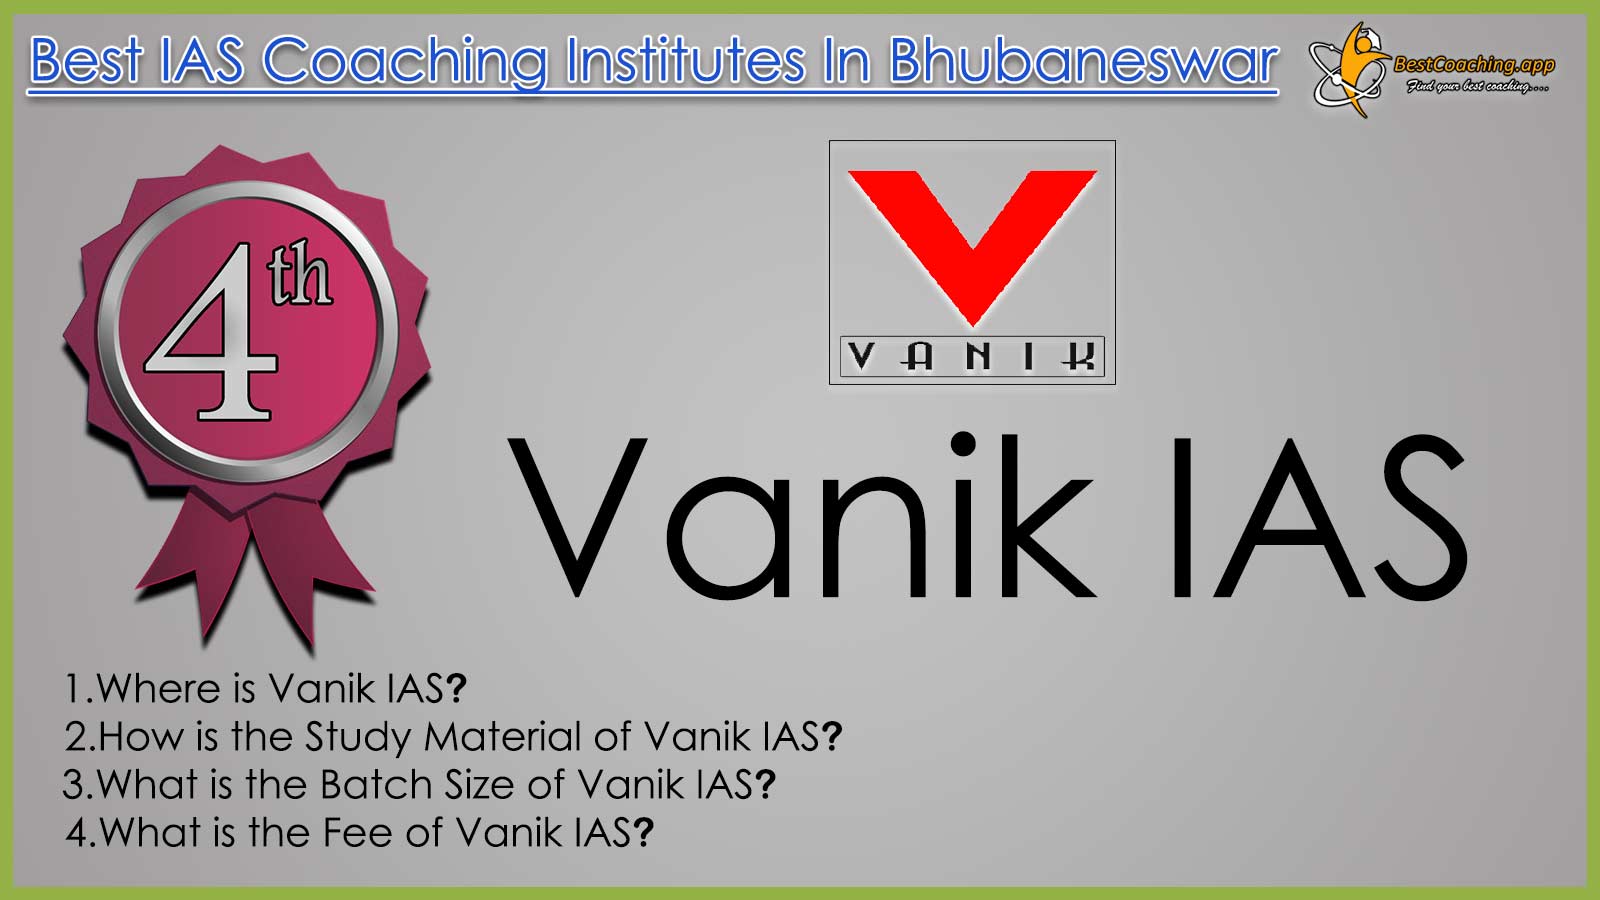 Vanik IAS Coaching